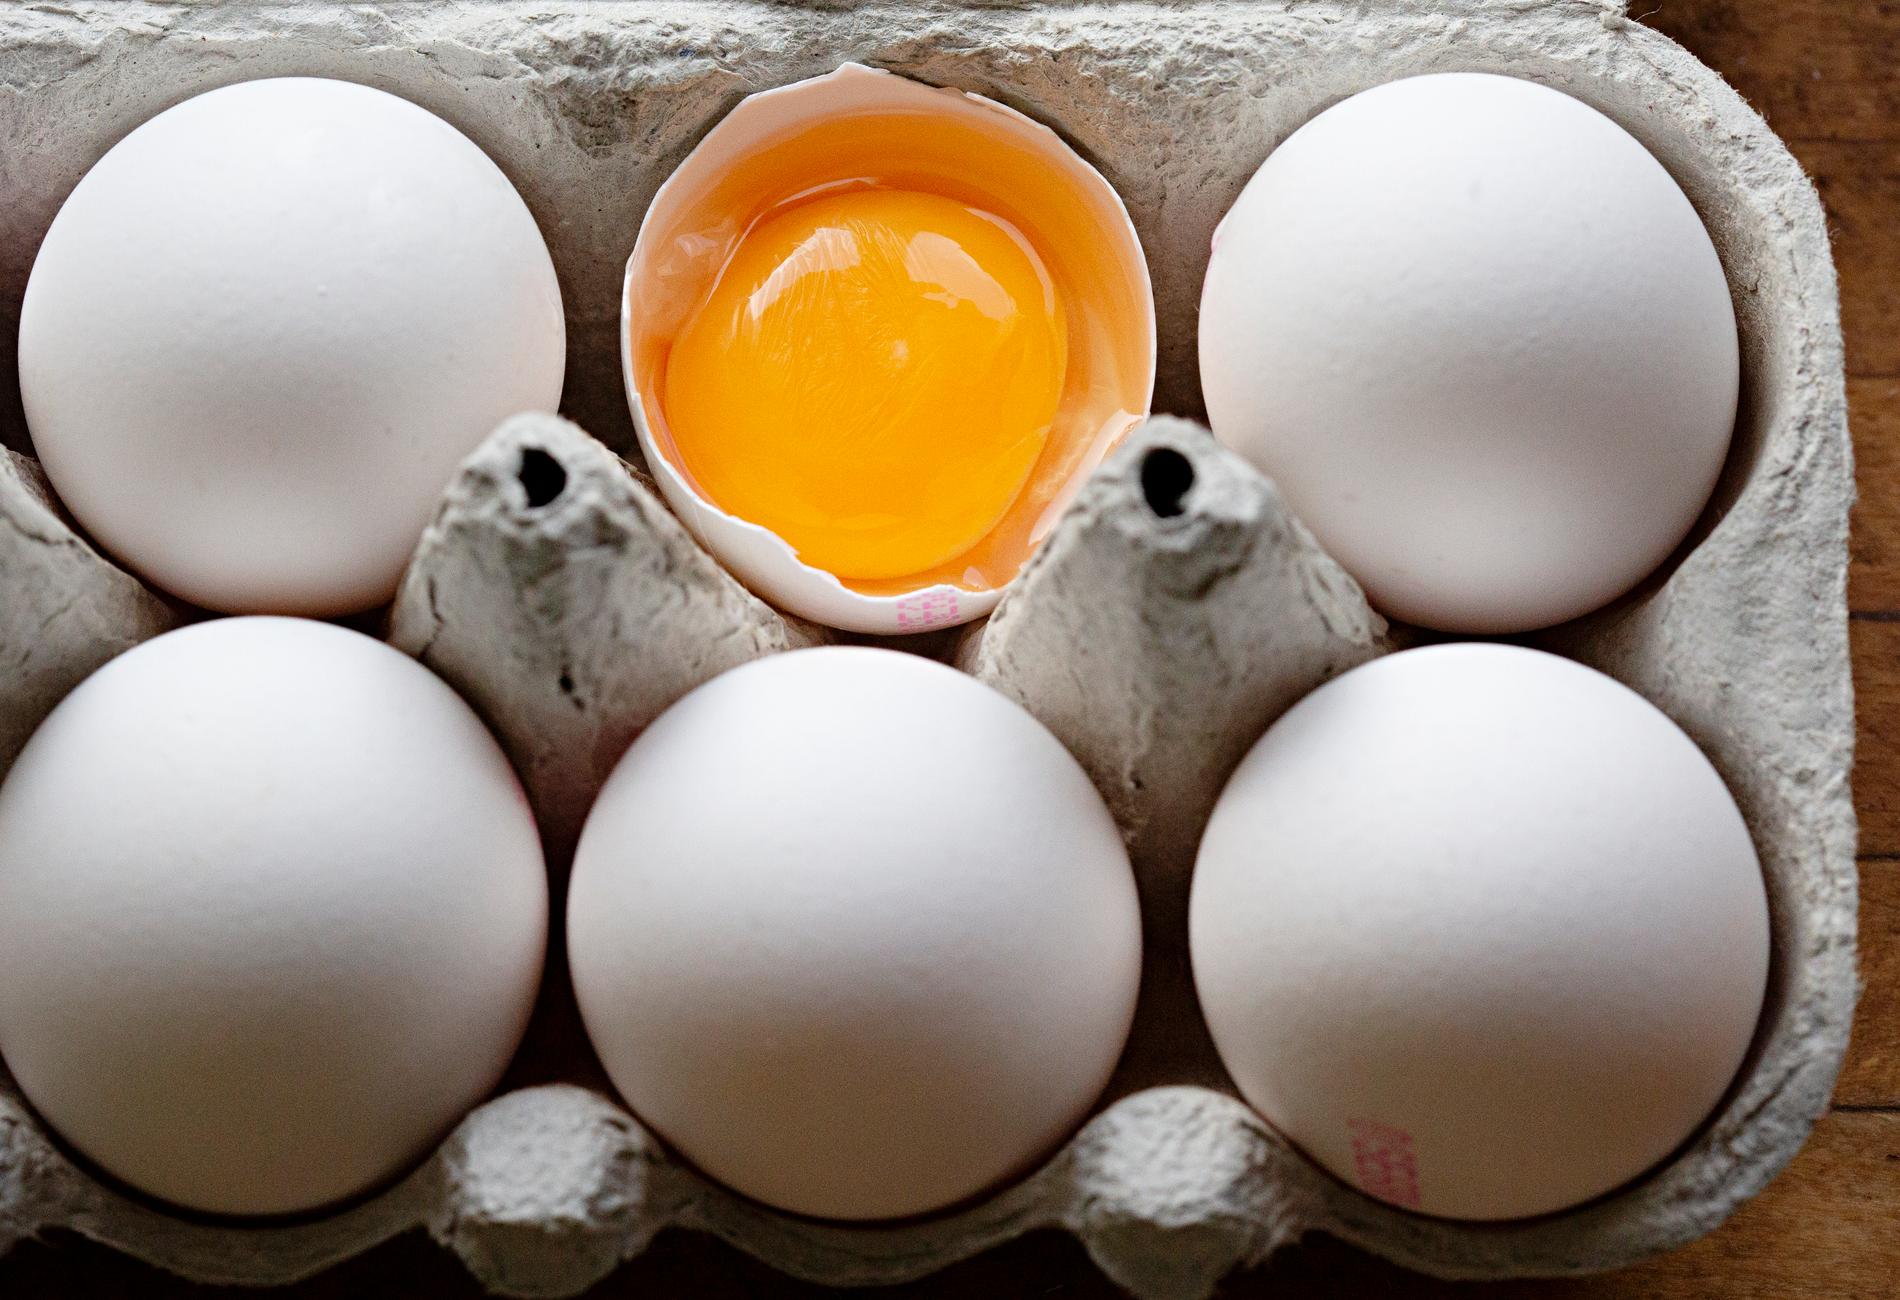 Flera livsmedelskedjor har återkallat äggpaket på grund av risk för salmonella. Arkivbild.